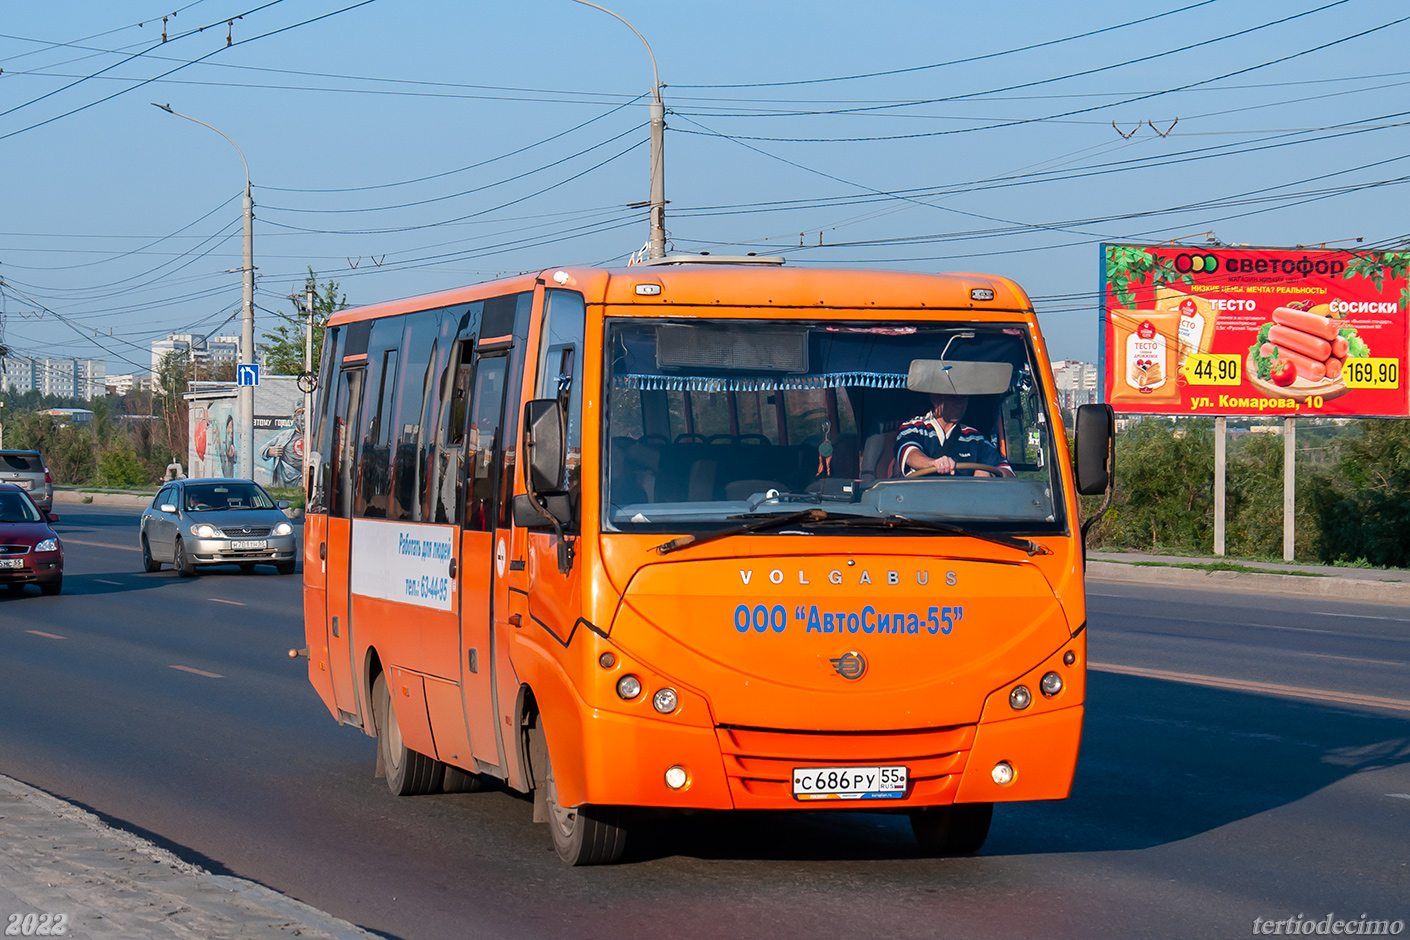 Omsk region, Volgabus-4298.01 # 2023